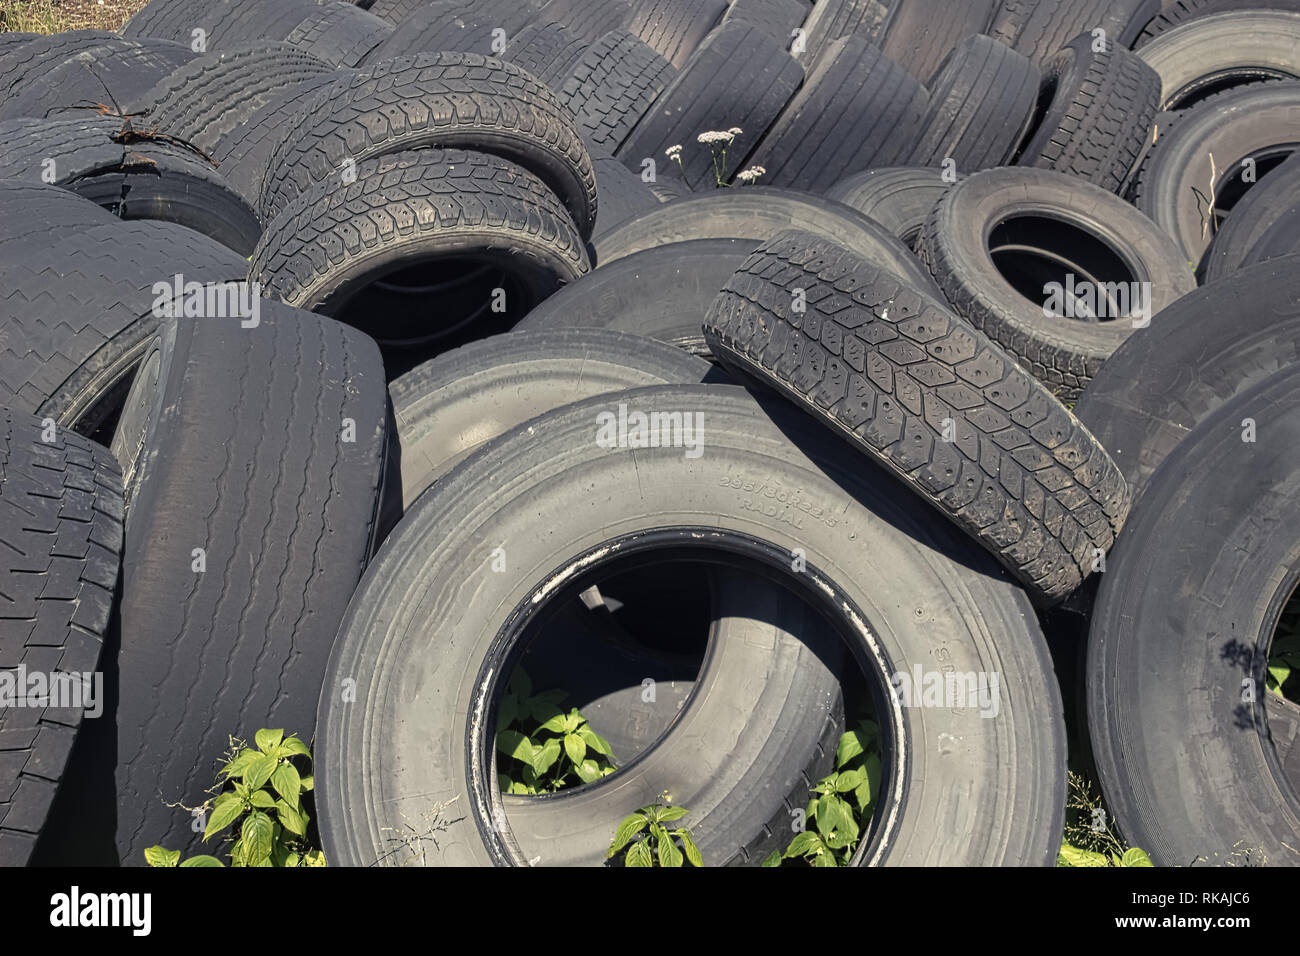 De vieux pneus usagés pour recyclage garni Photo Stock - Alamy